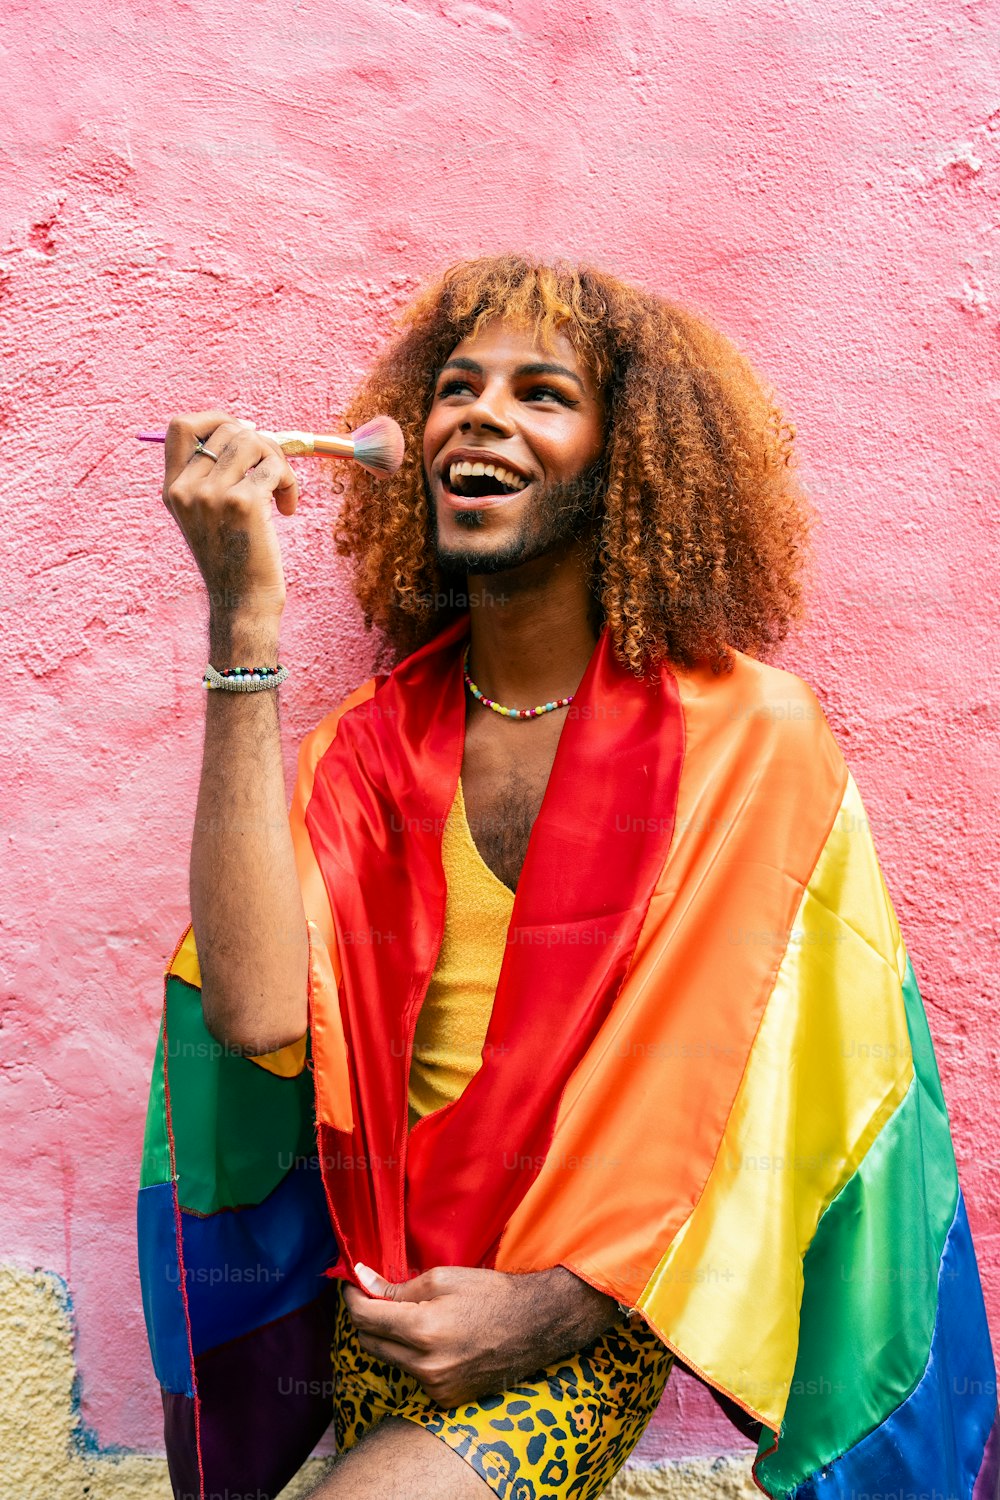 a man with long hair and a rainbow shirt